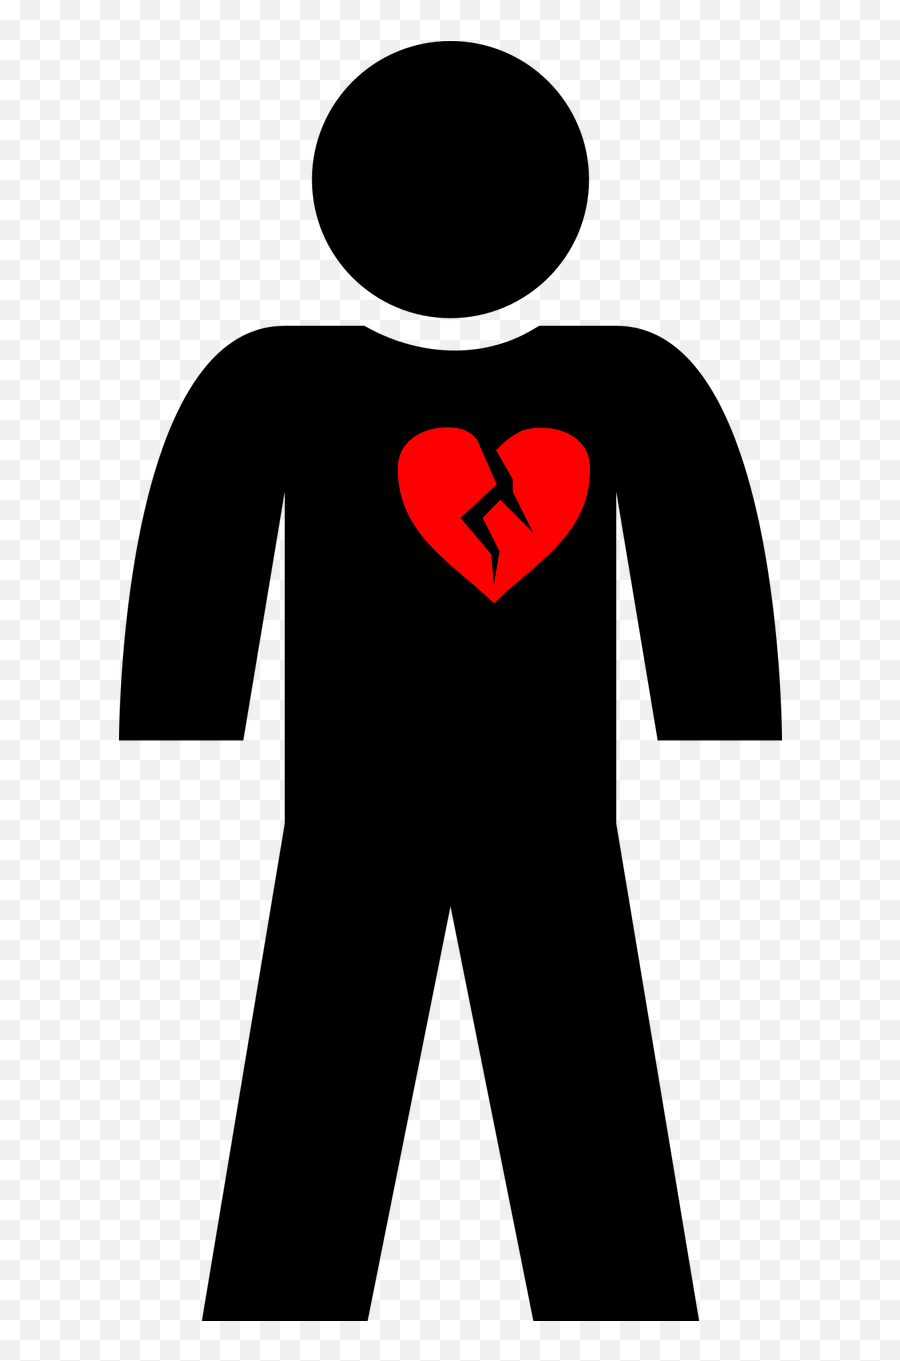 Man Pictogram The Figurine Broken Heart - Broken Heart Emoji,Toilet And Broken Heart Emoji